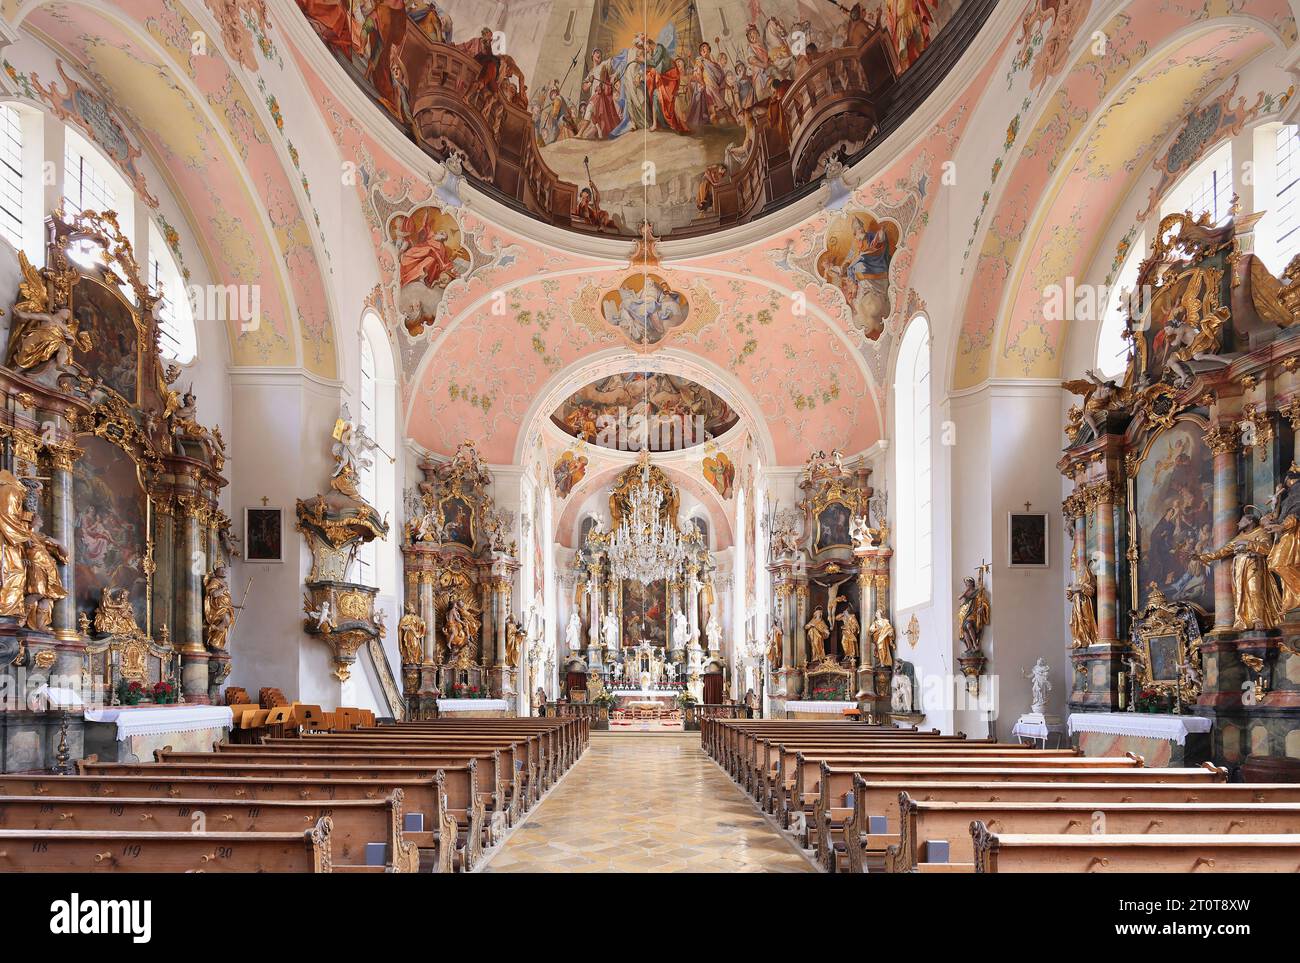 Église Saint-Pierre-Saint-Paul. Joseph Schmuzer dirigea la construction de l'église. Le plafond et les fresques murales ont été réalisés par Matthew Guenthe. Banque D'Images